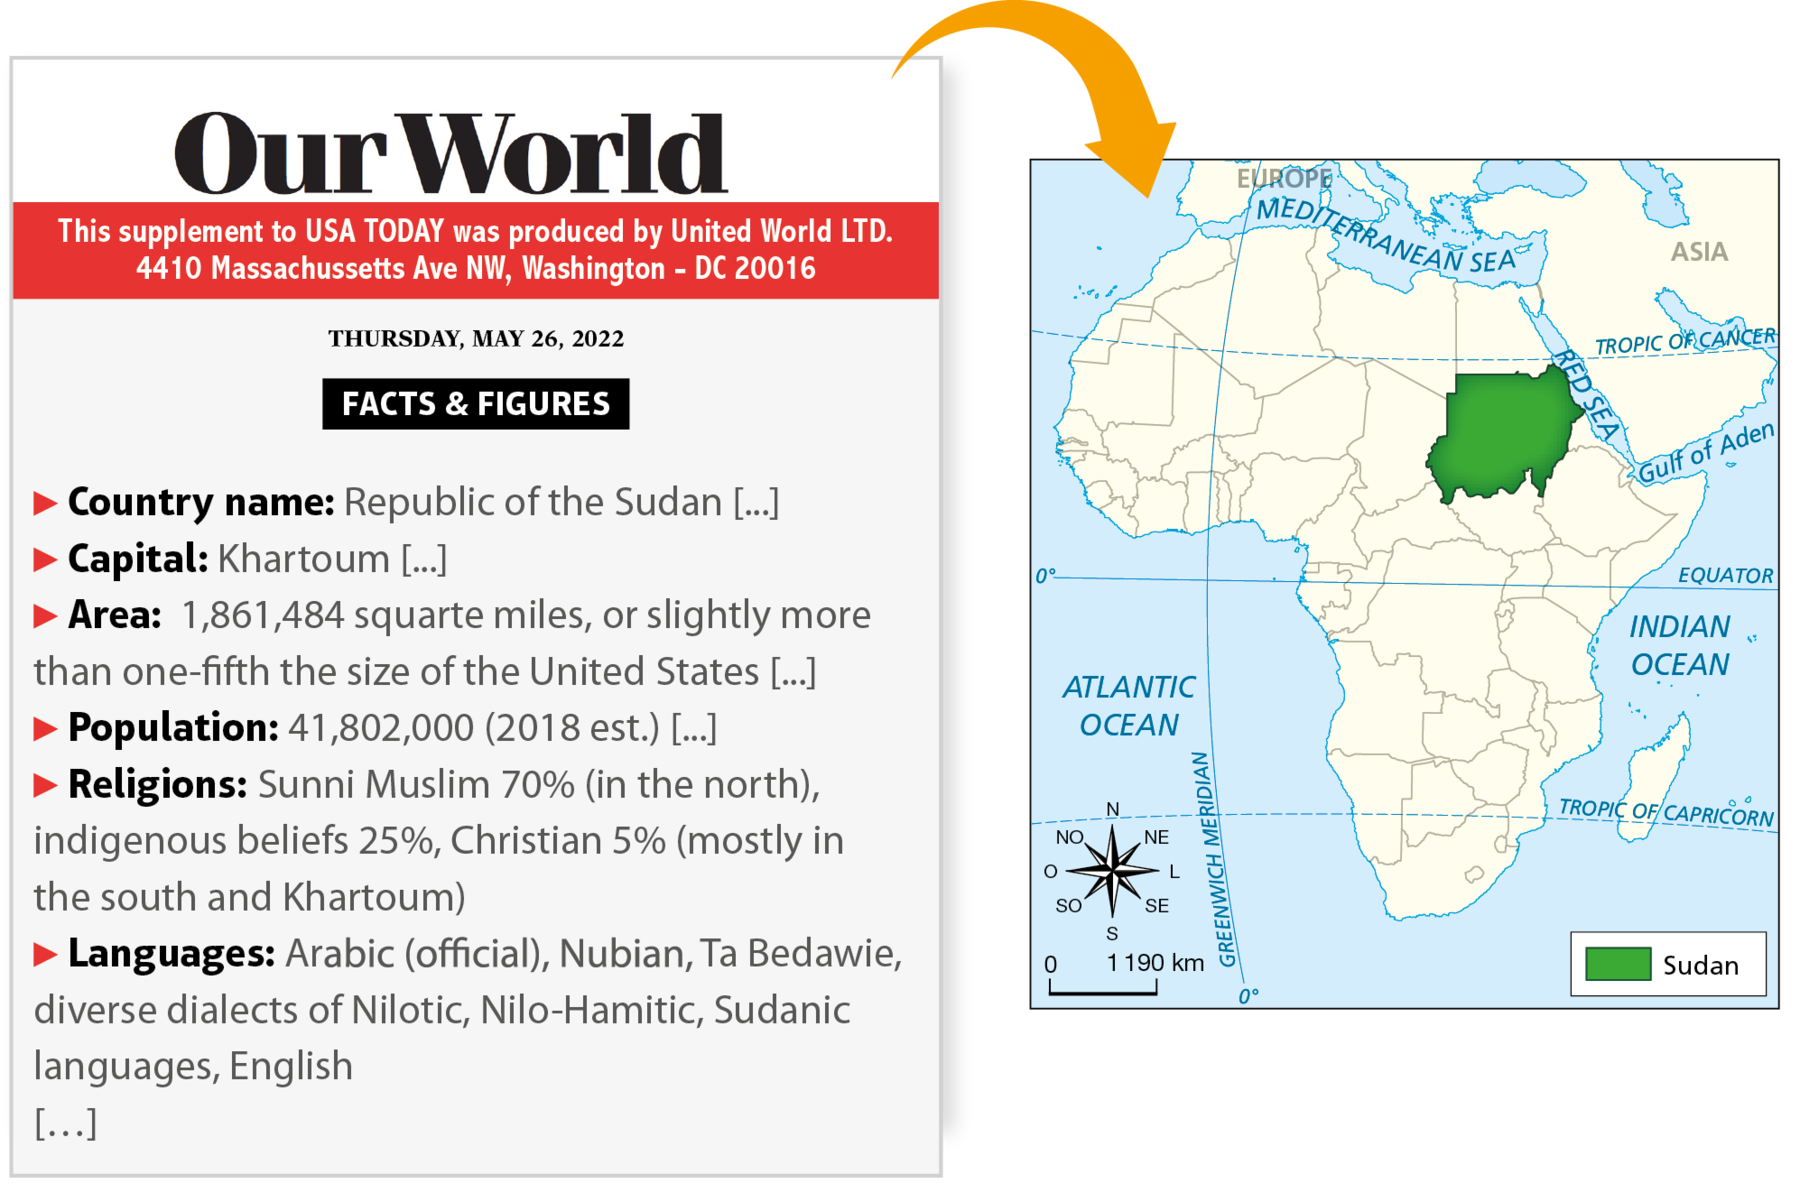 Composição mapa e texto.  Boxe com texto onde se lê: Our World This supplement to USA TODAY was produced by United World LTD. 4410 Massachussetts Ave NW, Washington - DC 20016 THURSDAY, MAY 26, 2022 FACTS & FIGURES Country name: Republic of the Sudan [...] Capital: Khartoum [...] Area: 1,861,484 squarte miles, or slightly more than one-­fifth the size of the United States [...] Population: 41,802,000 (2018 est.) [...] Religions: Sunni Muslim 70% (in the north), indigenous beliefs 25%, Christian 5% (mostly in the south and Khartoum) Languages: Arabic (official), Ta Bedawie, diverse dialects of Nilotic, Nilo-Hamitic, Sudanic languages, English […]. Do boxe de texto sai uma seta laranja apontando para o mapa. Mapa. Legenda: Verde: Sudan. No canto inferior esquerdo, uma rosa dos ventos, com direções: N, NO, O, SO, S, SE, L e NE. Escala: zero – one thousand one hundred ninety kilometers. O país esta no nordeste do continente africano e está pintado de verde. Ao lado, há um boxe com texto.